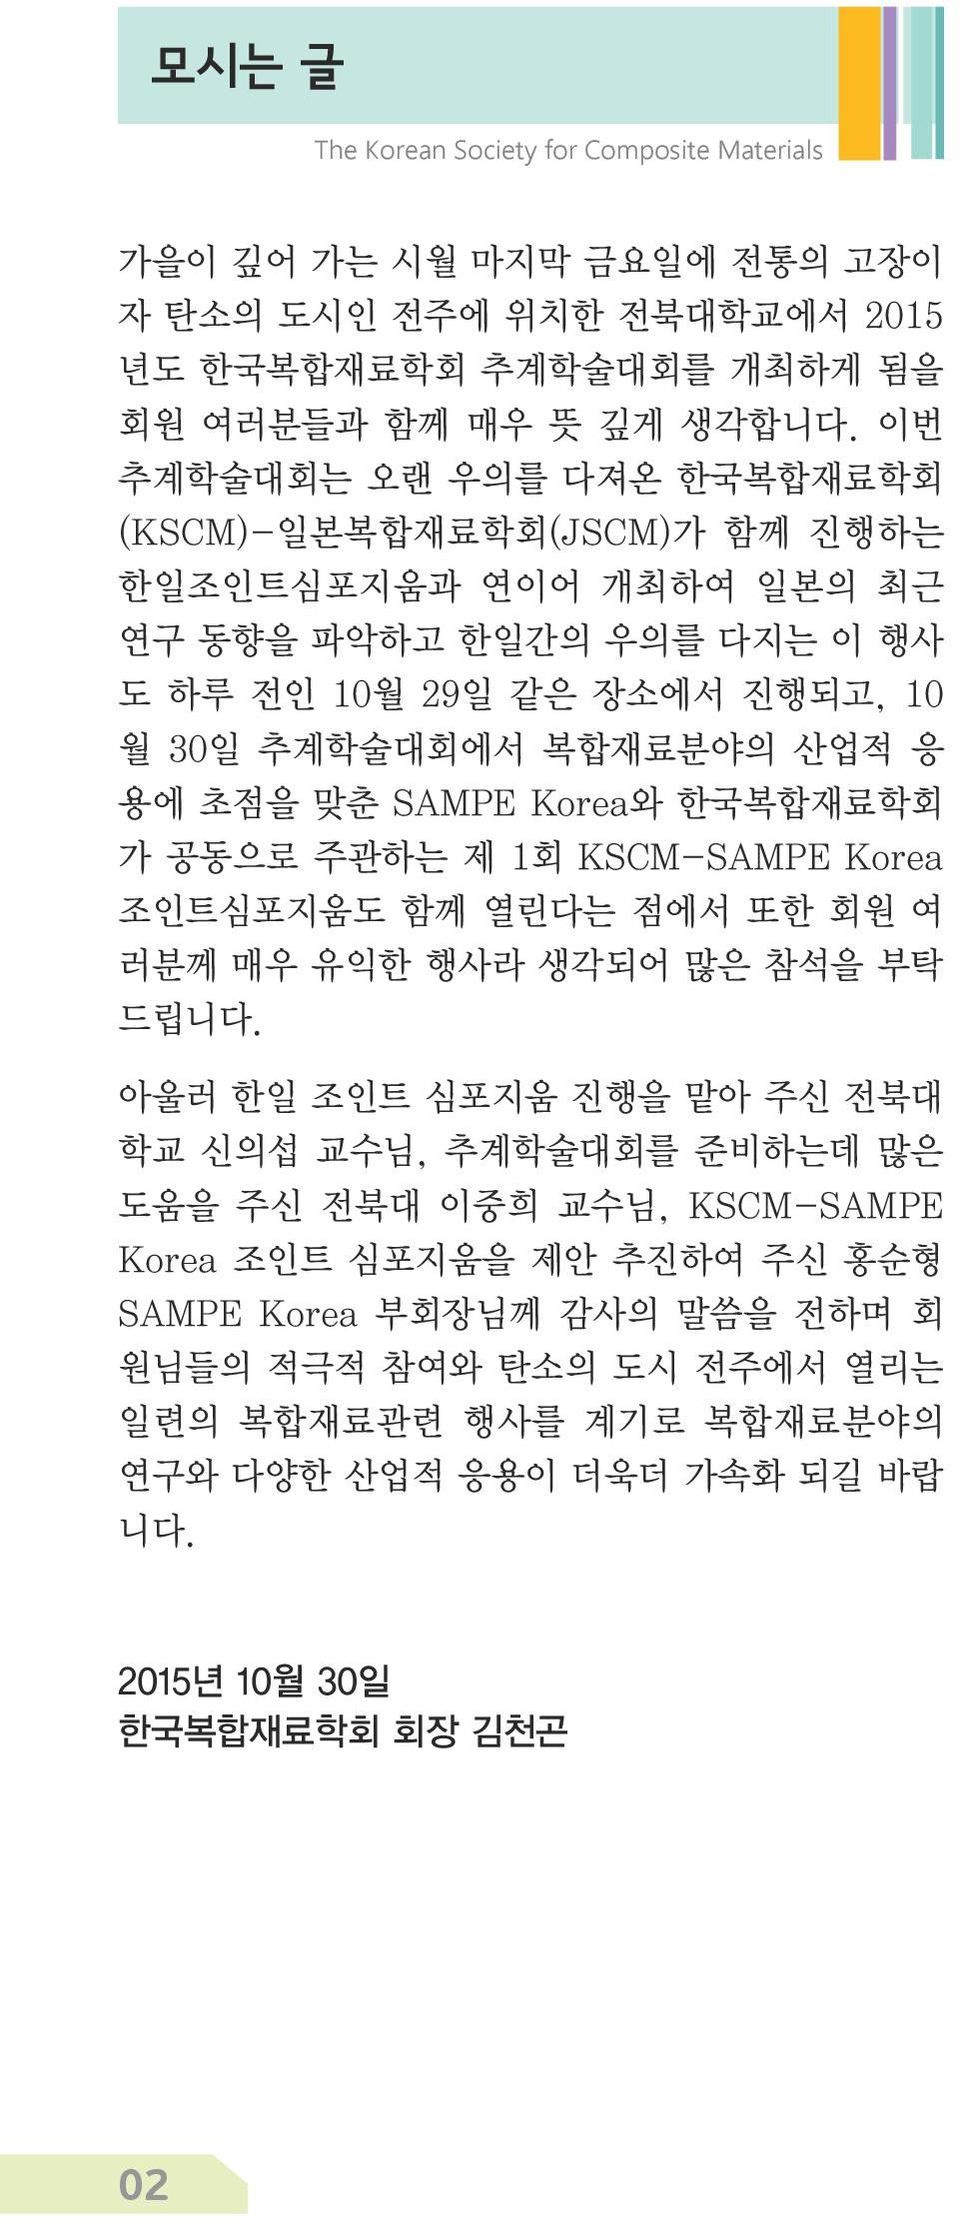 산업적 응 용에 초점을 맞춘 SAMPE Korea와 한국복합재료학회 가 공동으로 주관하는 제 1회 KSCM-SAMPE Korea 조인트심포지움도 함께 열린다는 점에서 또한 회원 여 러분께 매우 유익한 행사라 생각되어 많은 참석을 부탁 드립니다.